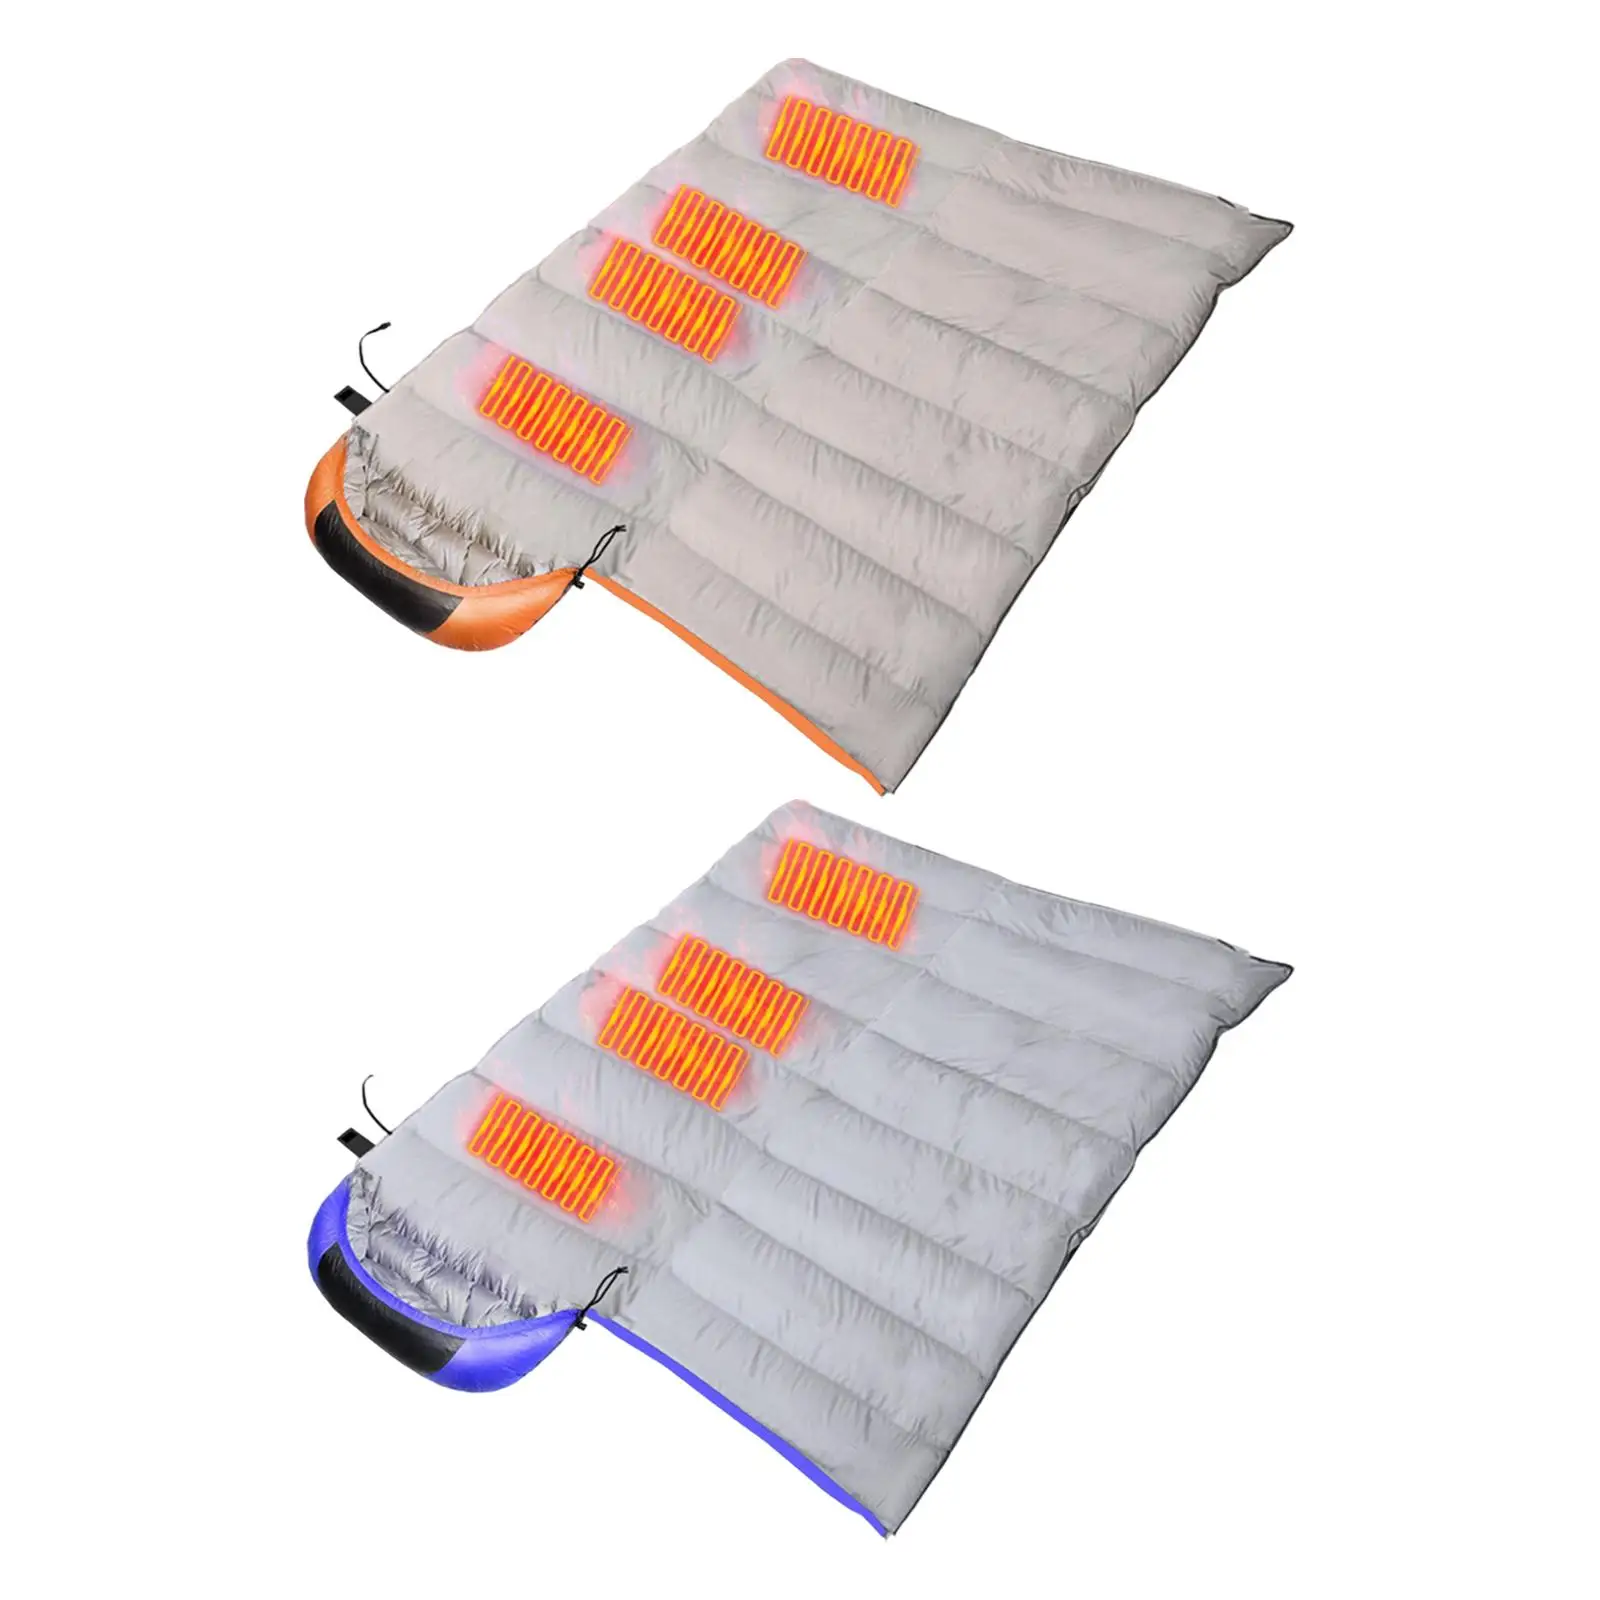 Compact Heated Sleeping Bag Soft USB Warm Winter Sleeping Bag